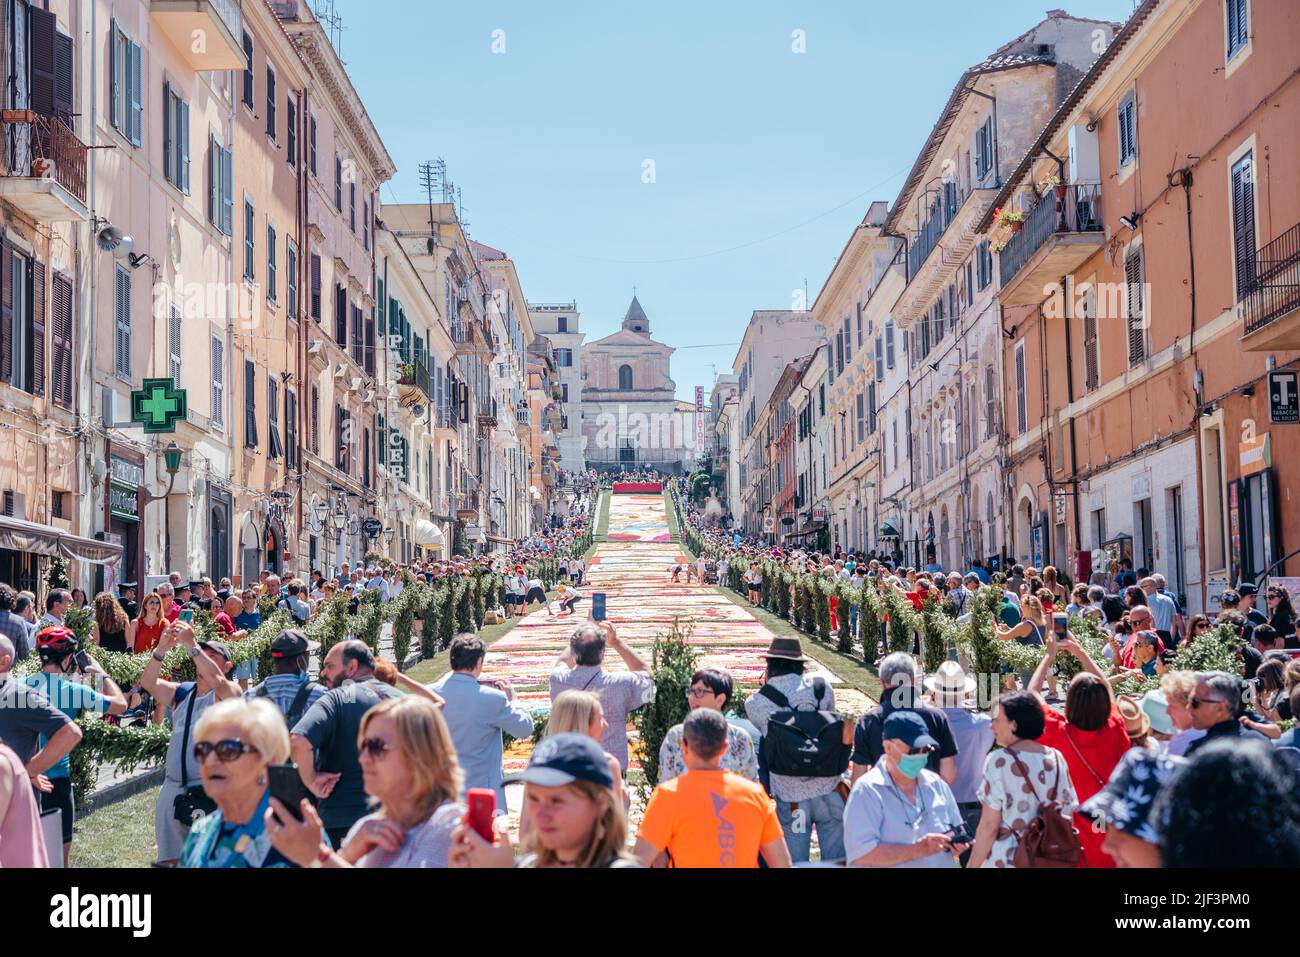 GENZANO, ITALIE - JUIN 19: Festival de fleurs l'Infiorata di Genzano sur 18 juin 2022 à Genzano, Italie, la magnifique moquette fleurie faite de pétales Banque D'Images